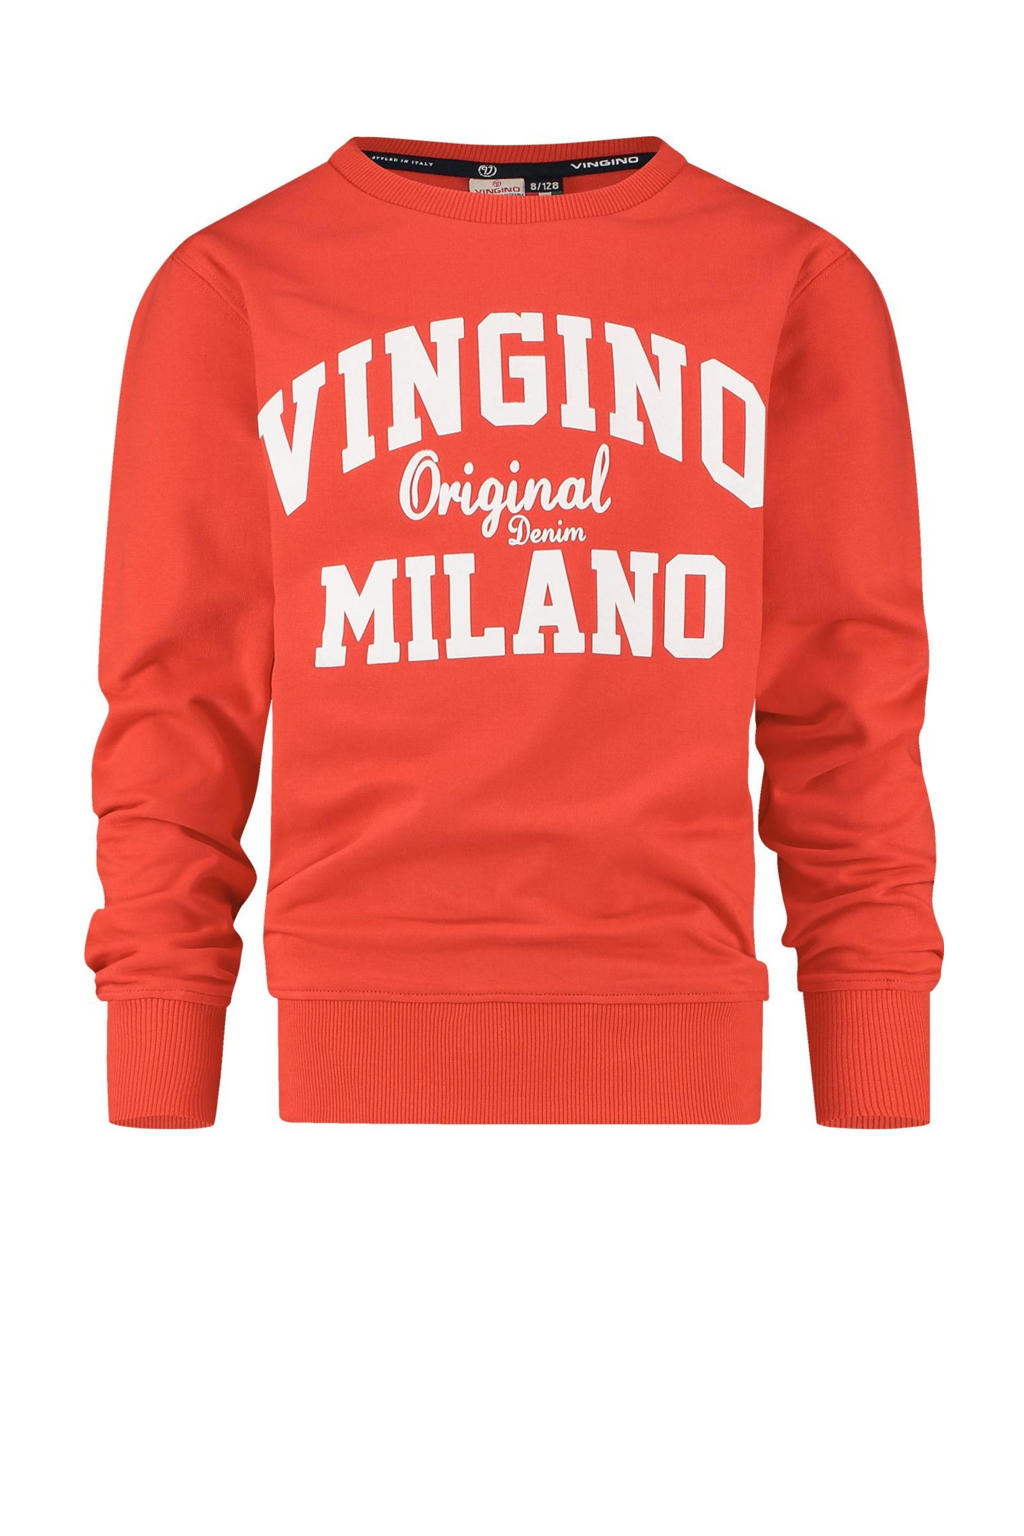 Rode jongens Vingino Essentials sweater met logo dessin, lange mouwen en ronde hals